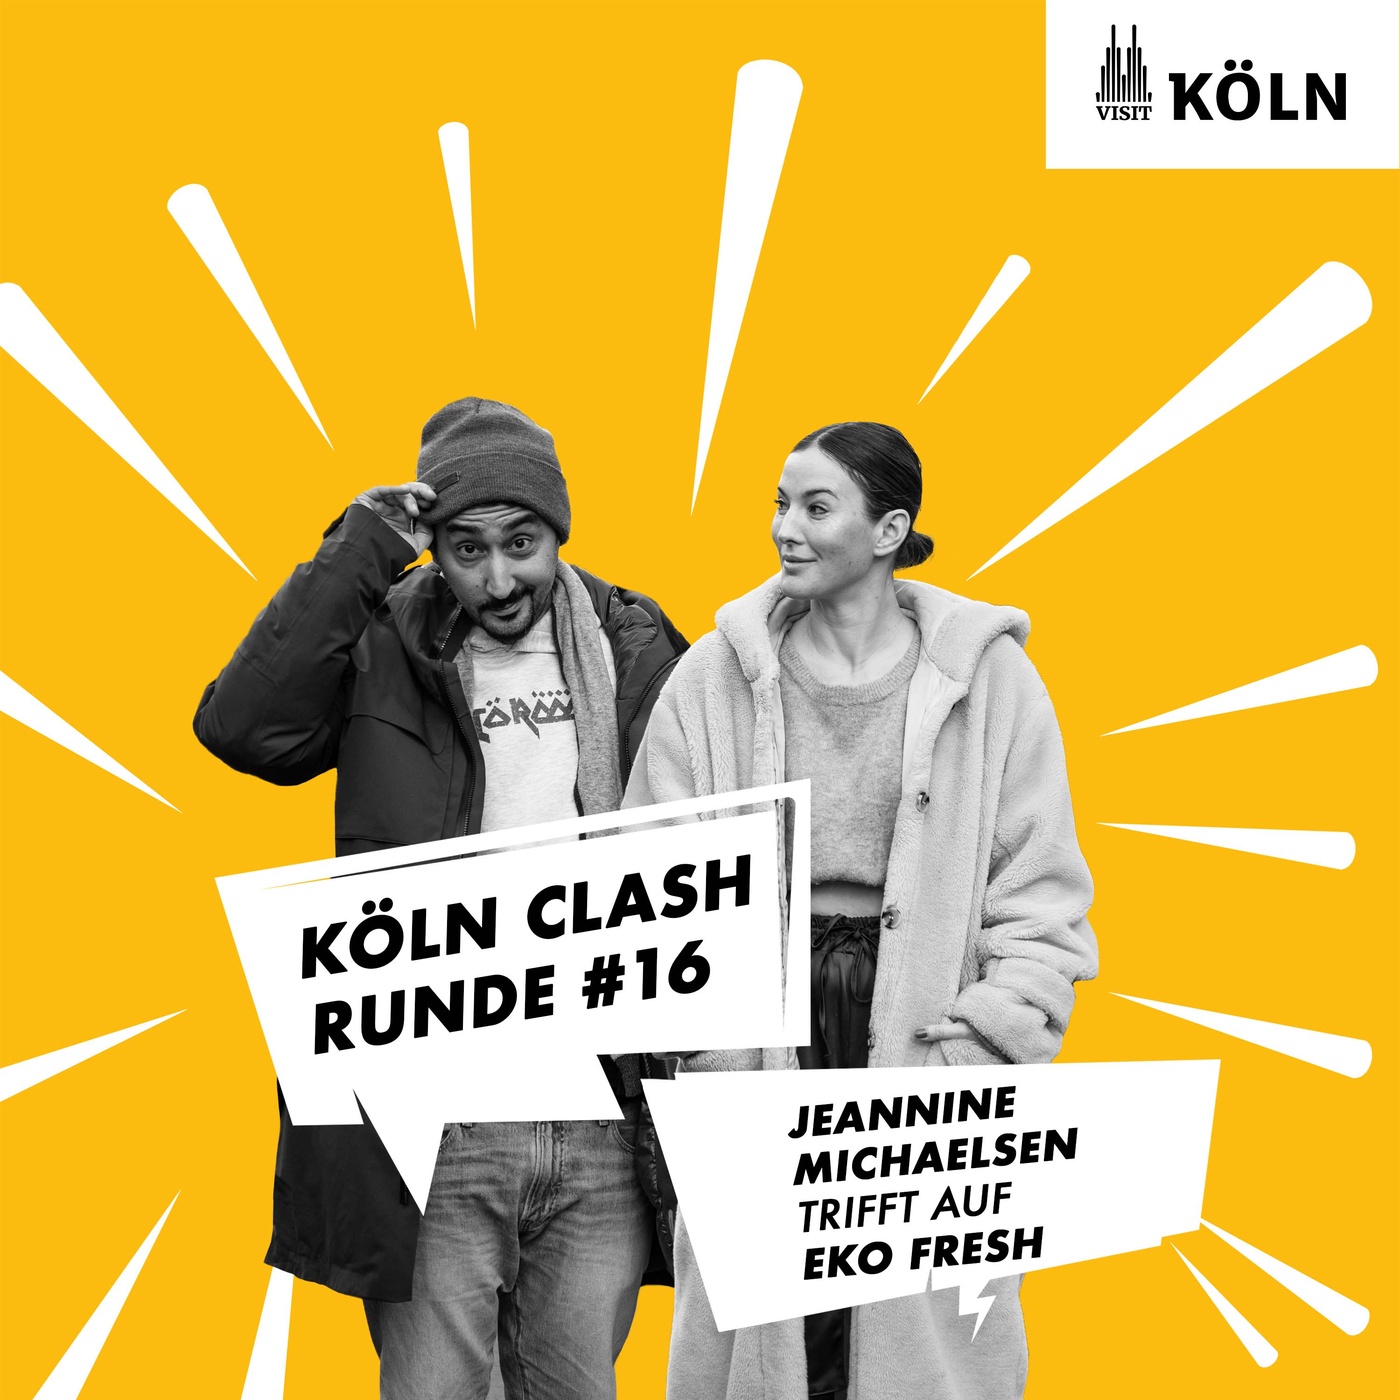 Köln Clash, Runde #16 - Jeannine Michaelsen trifft auf Eko Fresh